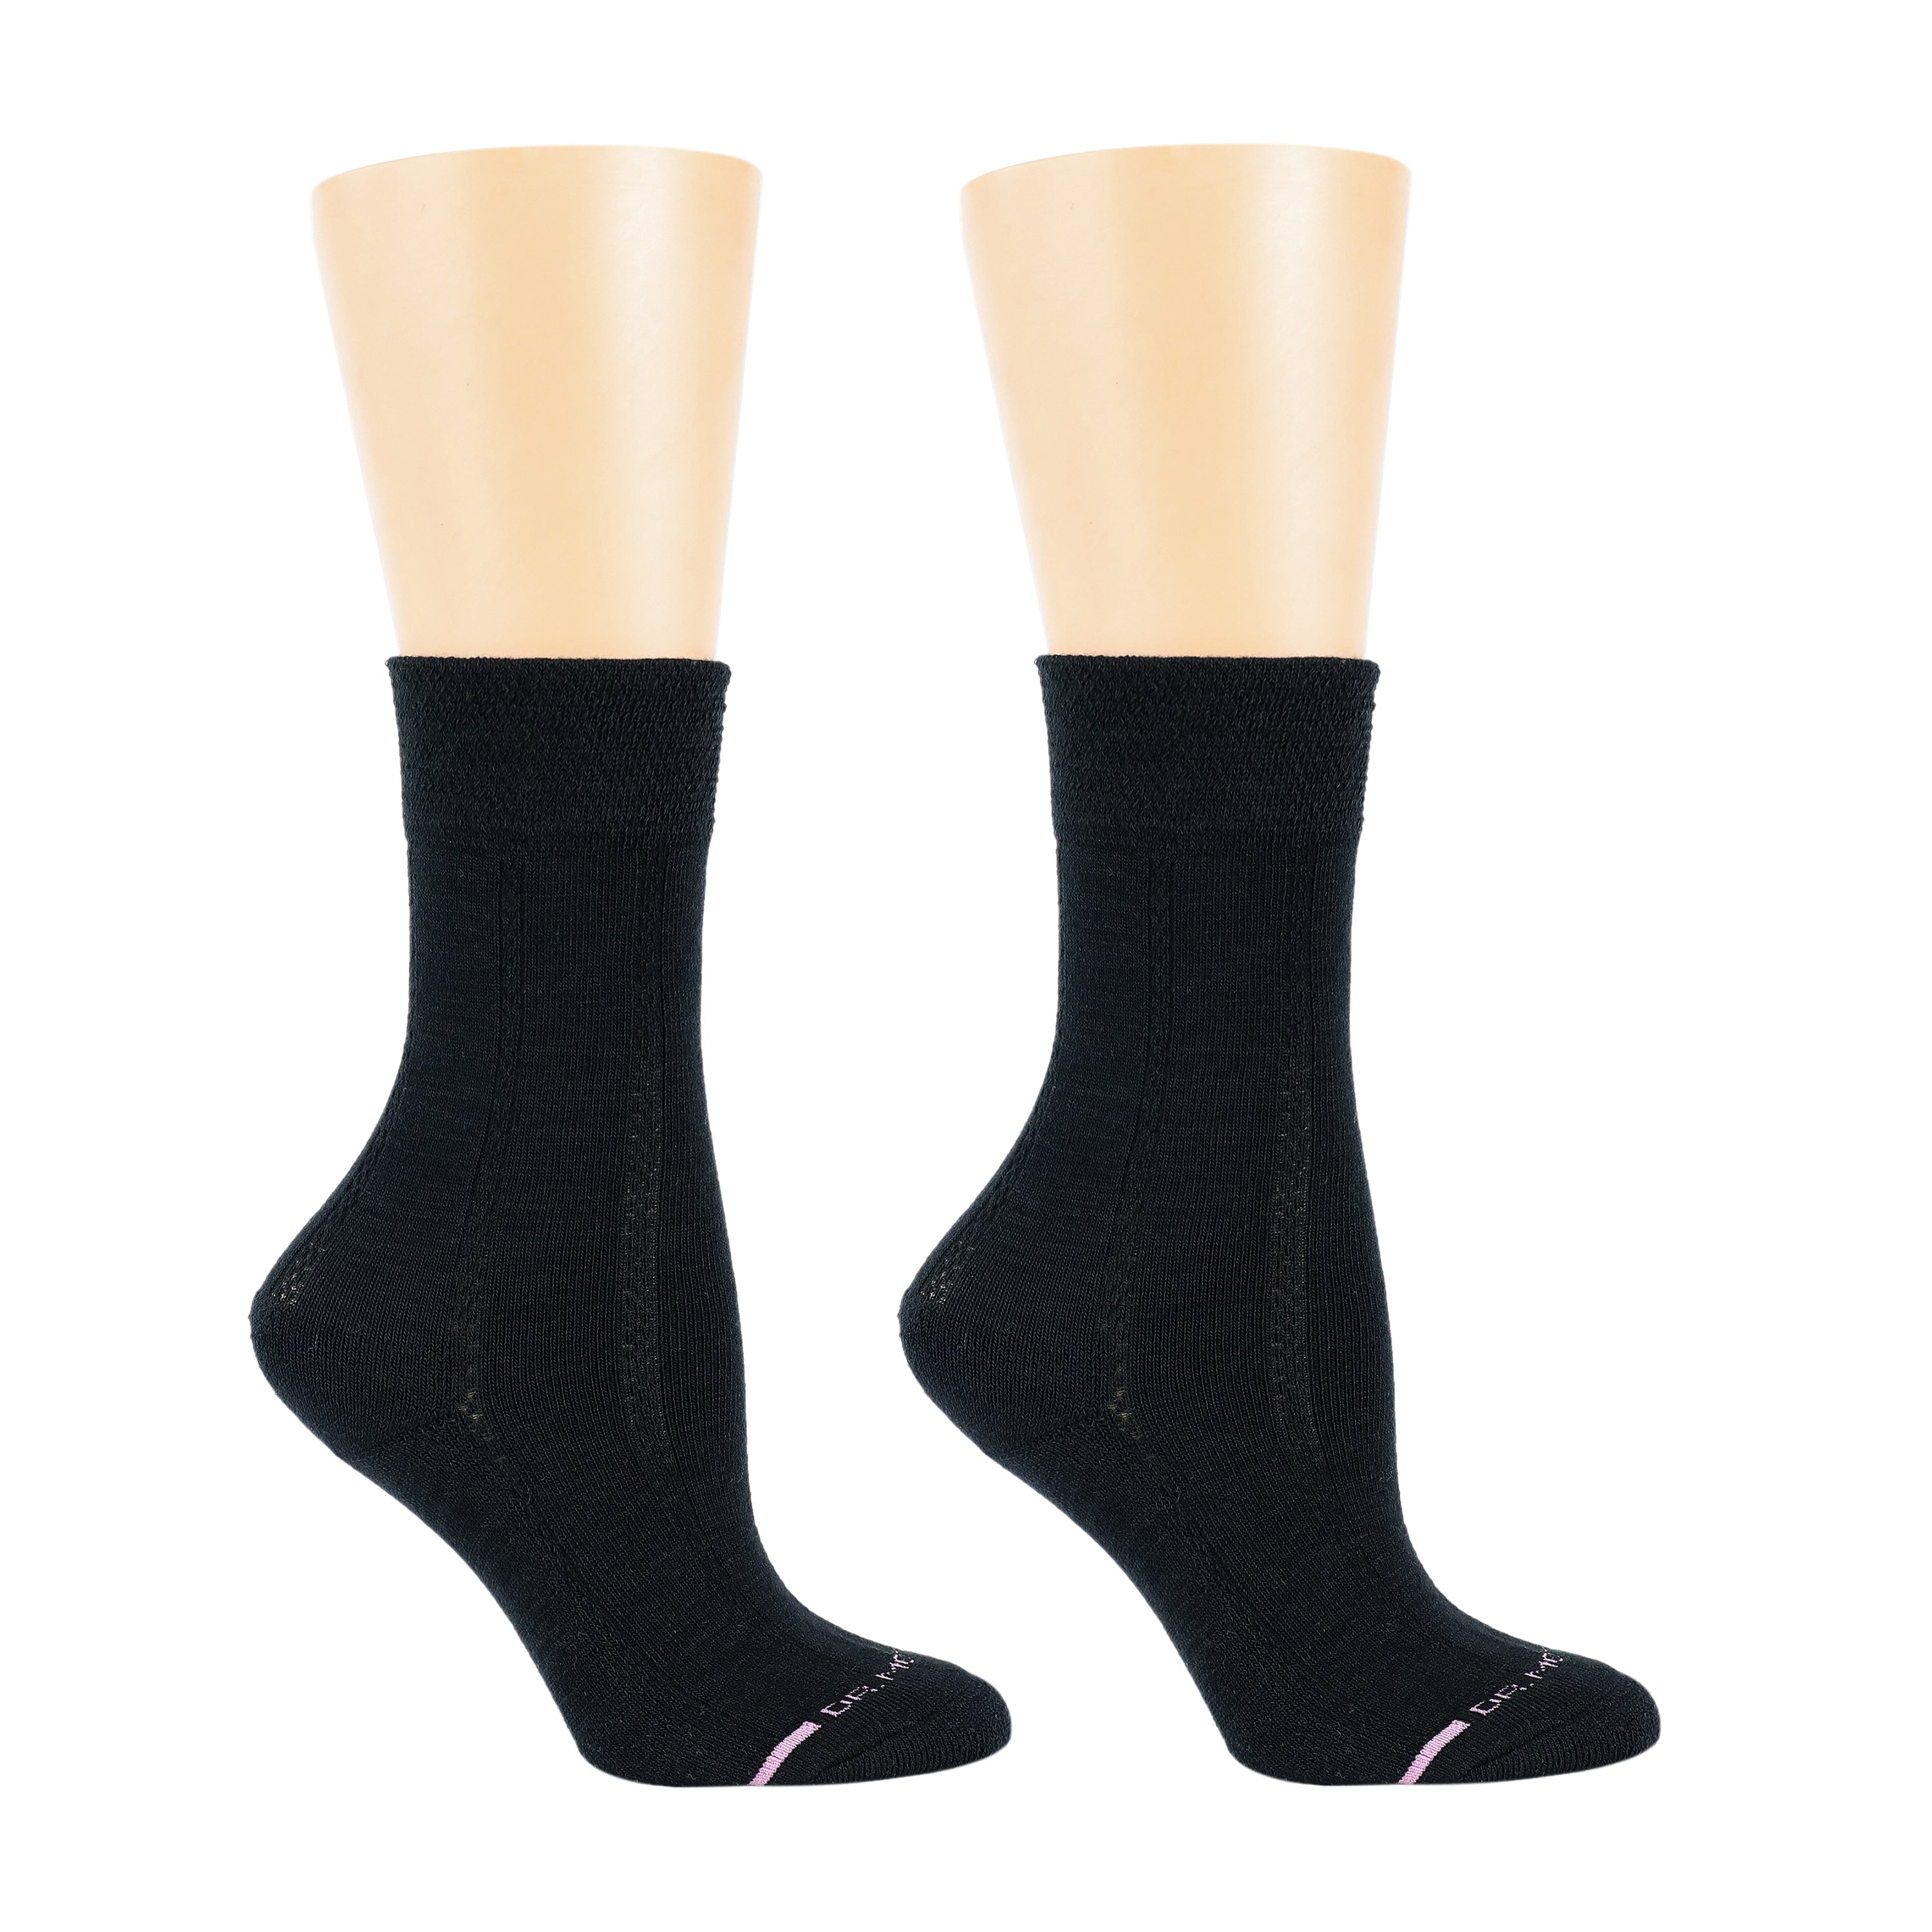 Texture Column | Comfort Top Socks For Women